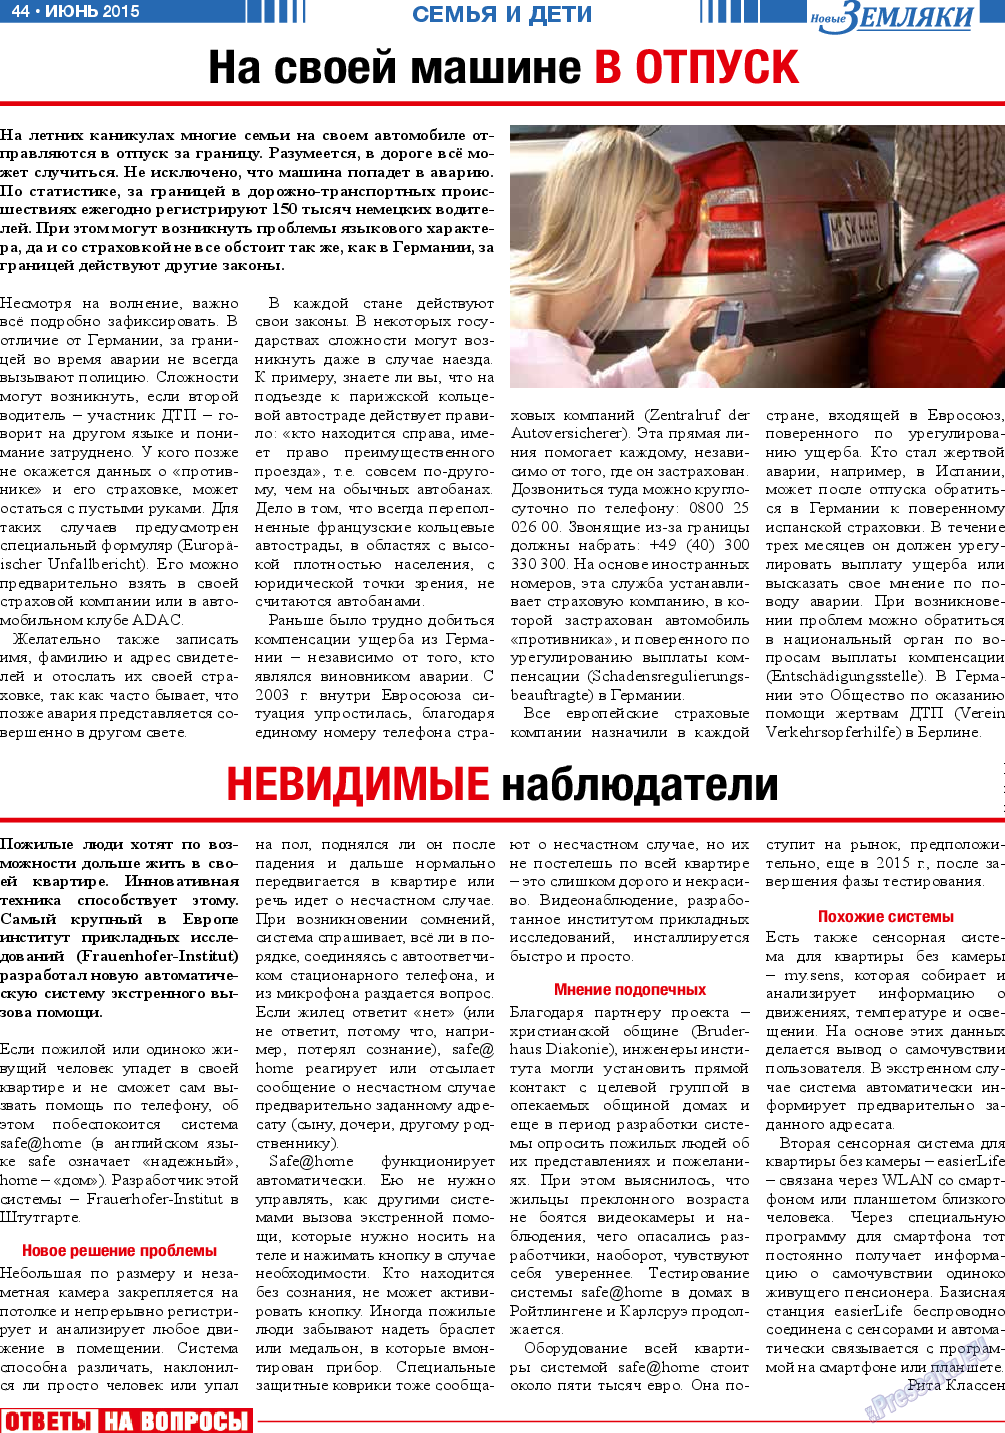 Новые Земляки, газета. 2015 №6 стр.44